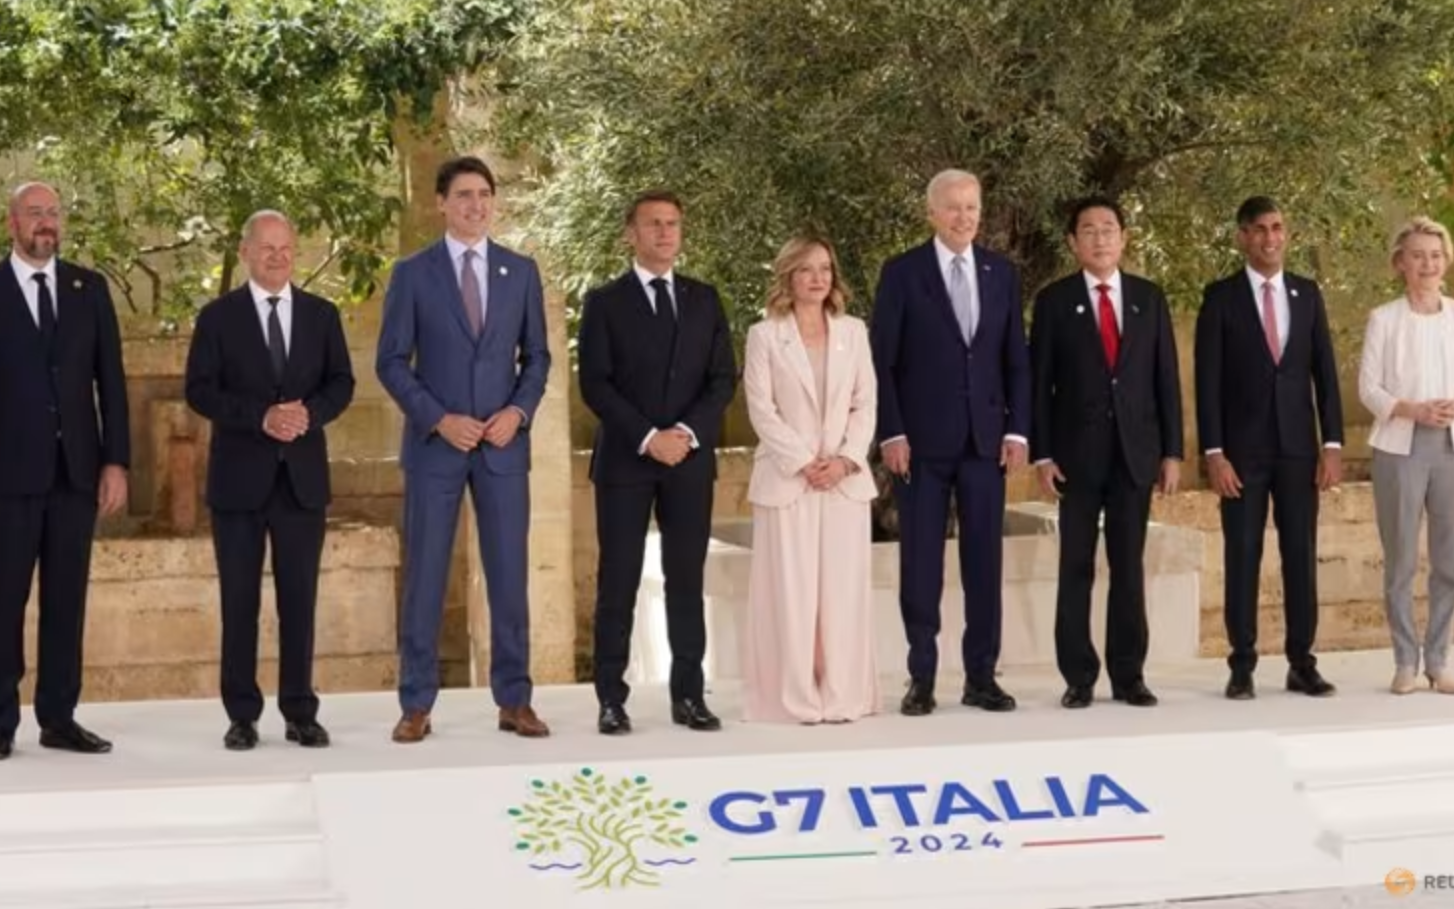 Thử thách nước sôi lửa bỏng nhất trong nhiều năm với dàn lãnh đạo G7 2024